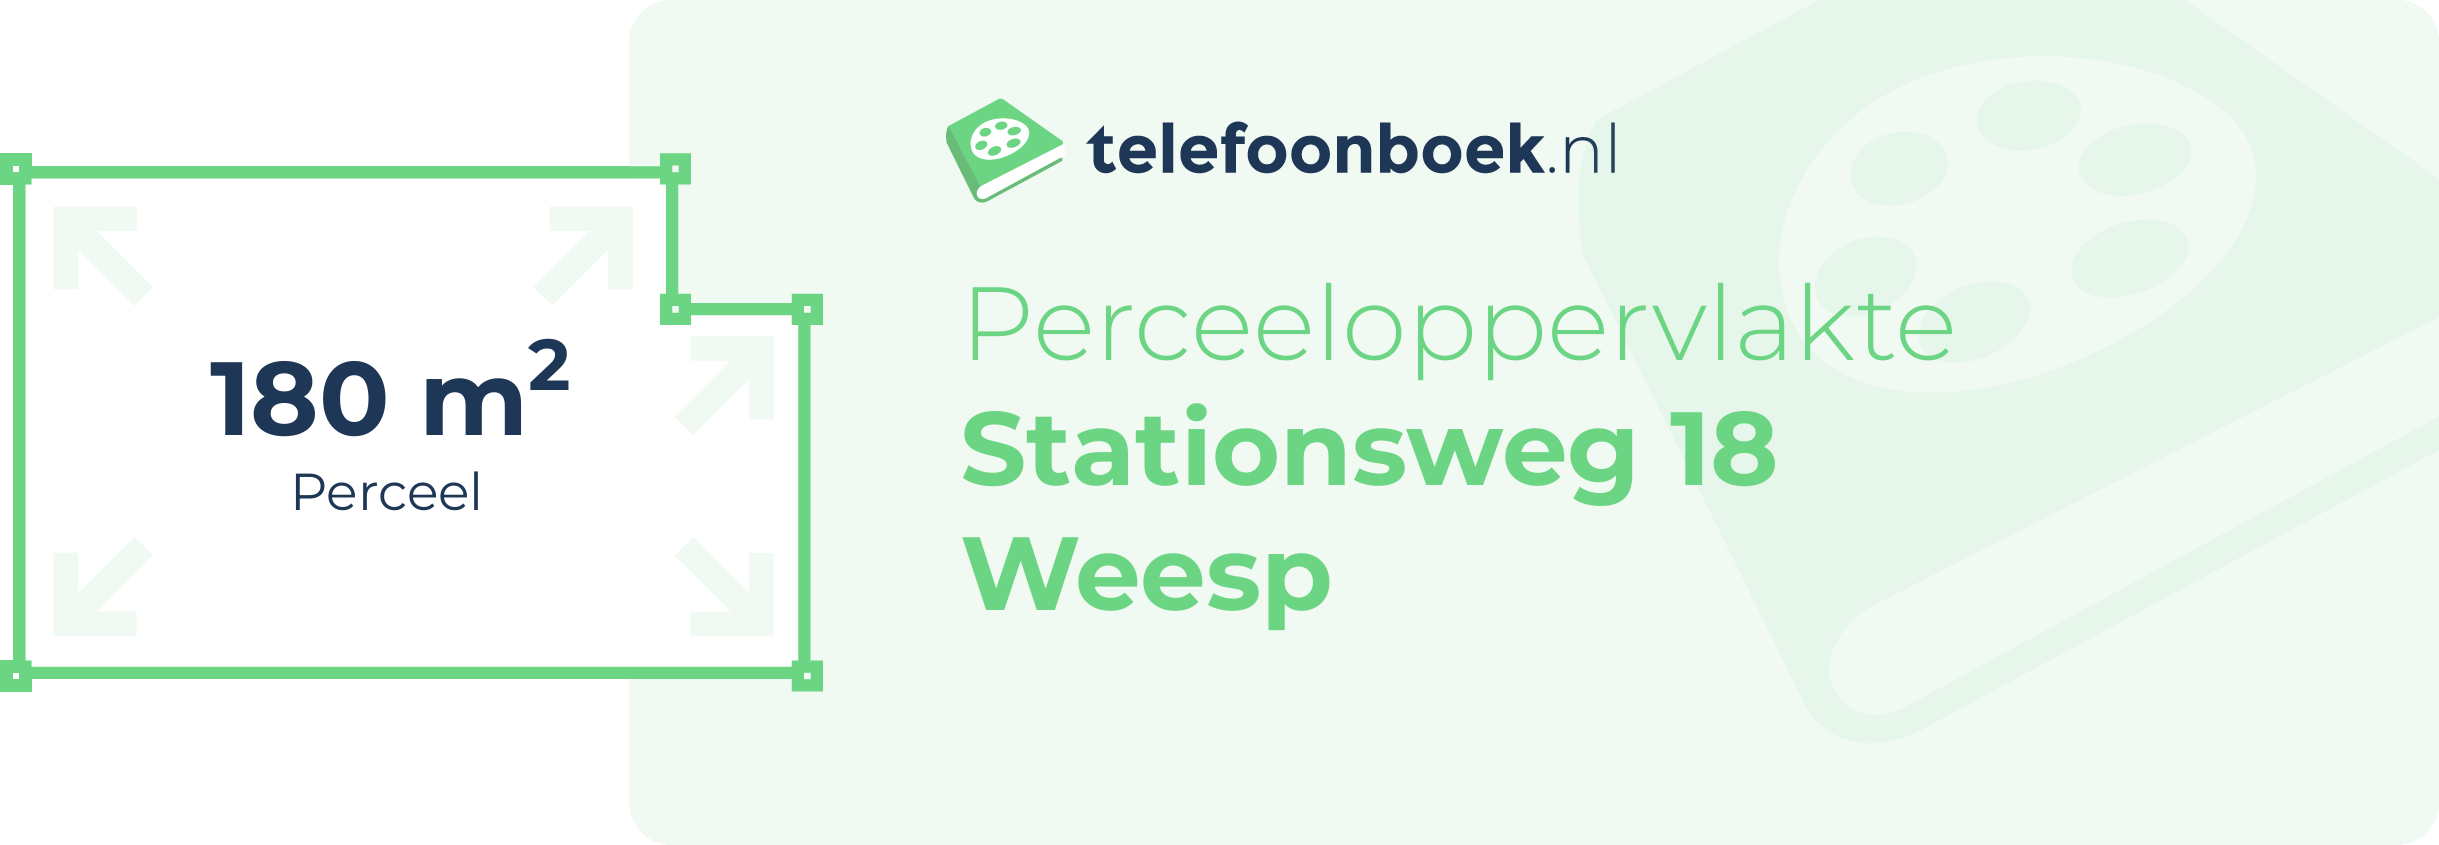 Perceeloppervlakte Stationsweg 18 Weesp